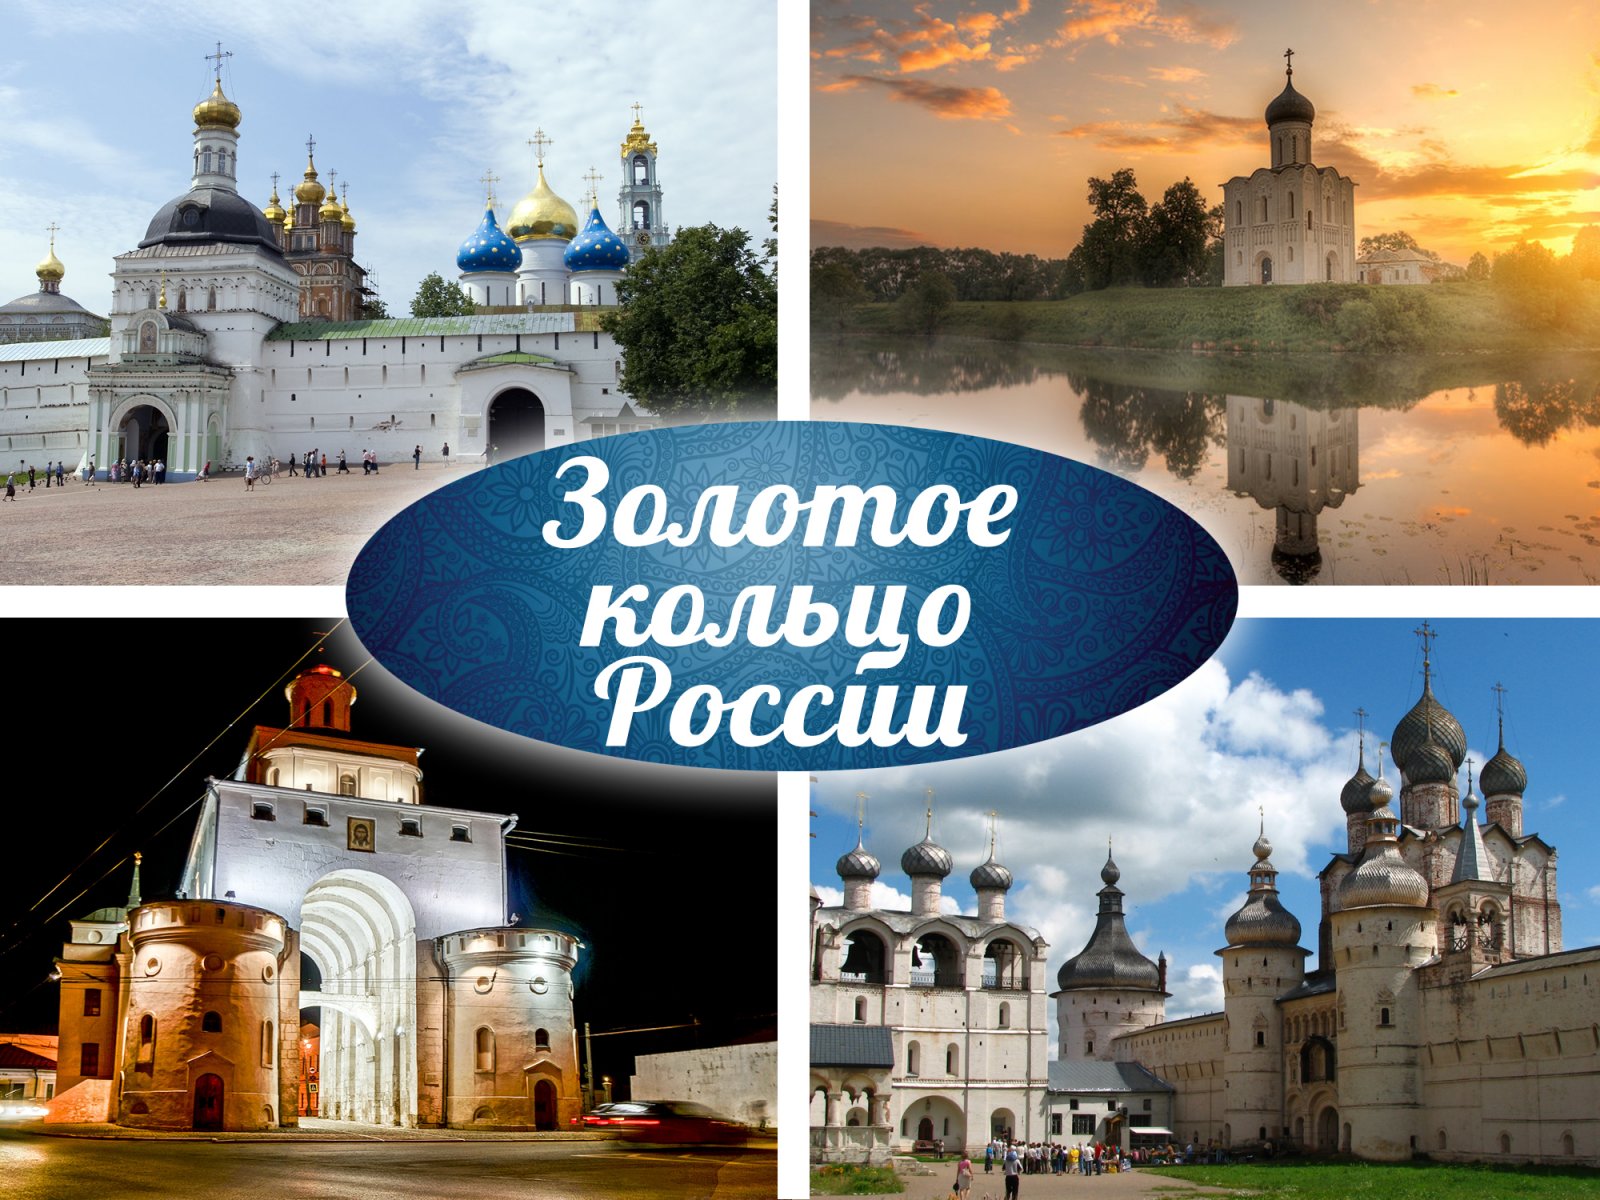 Отправление из Санкт-Петербурга, программа тура в приложении